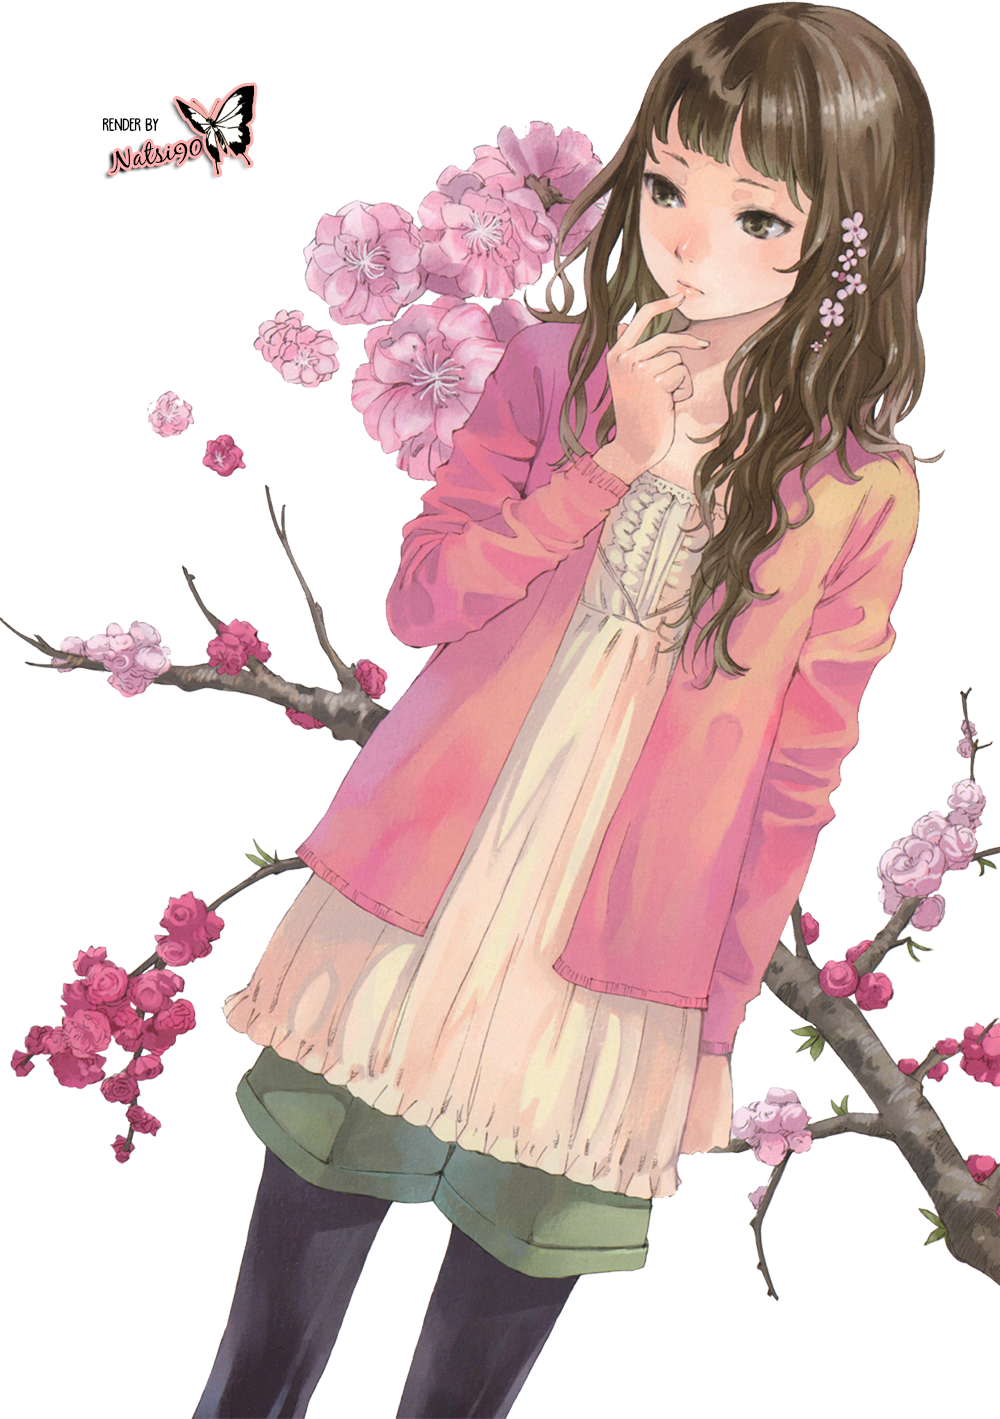 Anime Flower Girl by Natsi90 on DeviantArt